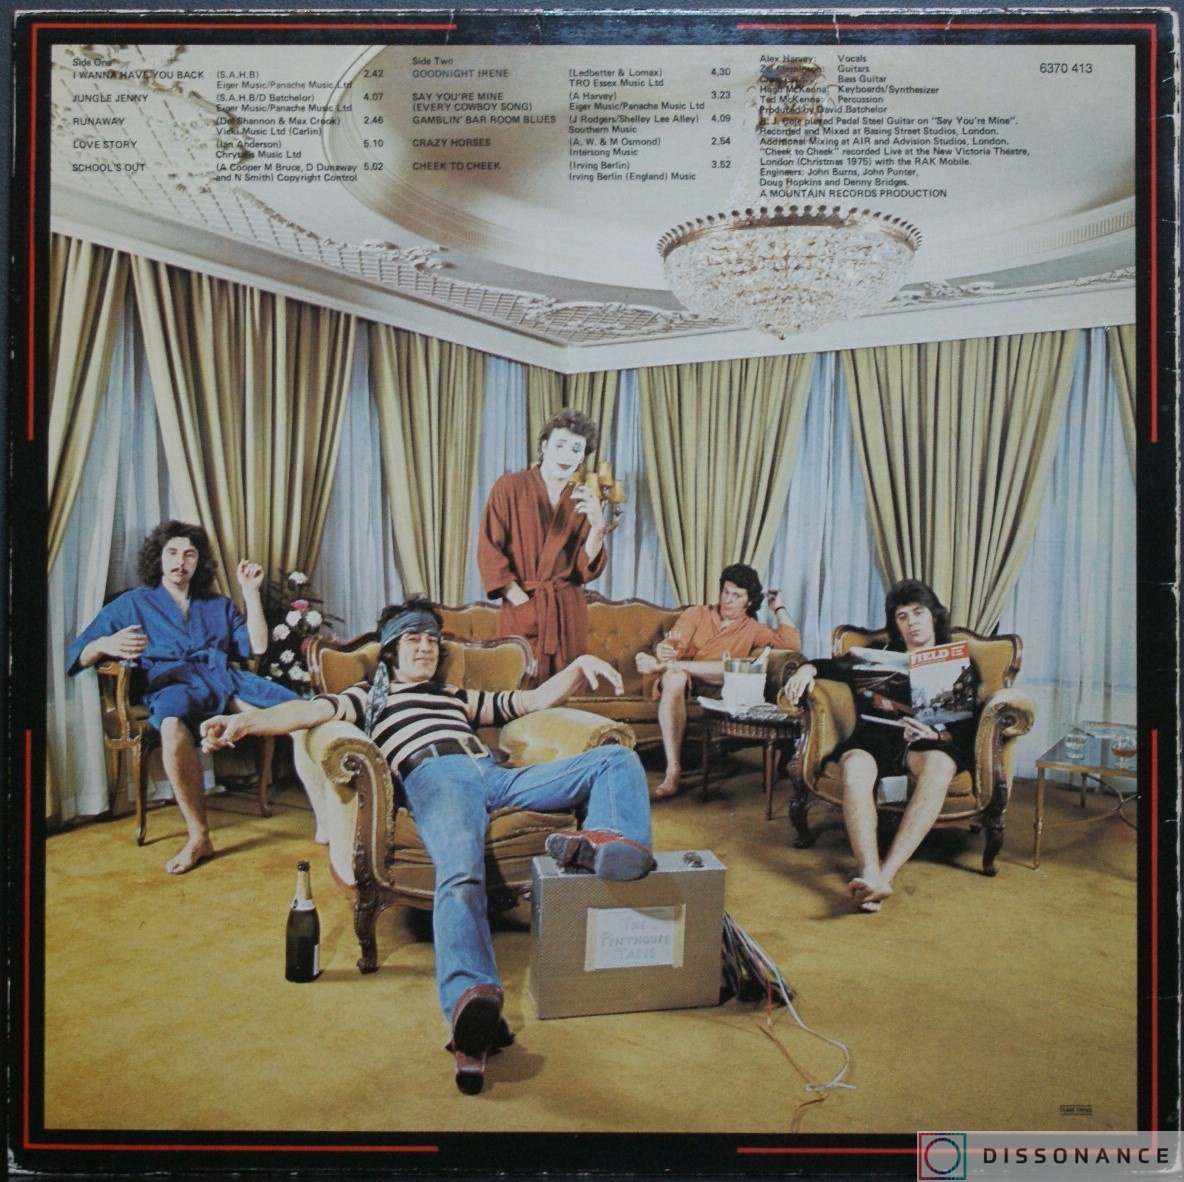 Виниловая пластинка Sensational Alex Harvey Band - Penthouse Tapes (1976) - фото 1